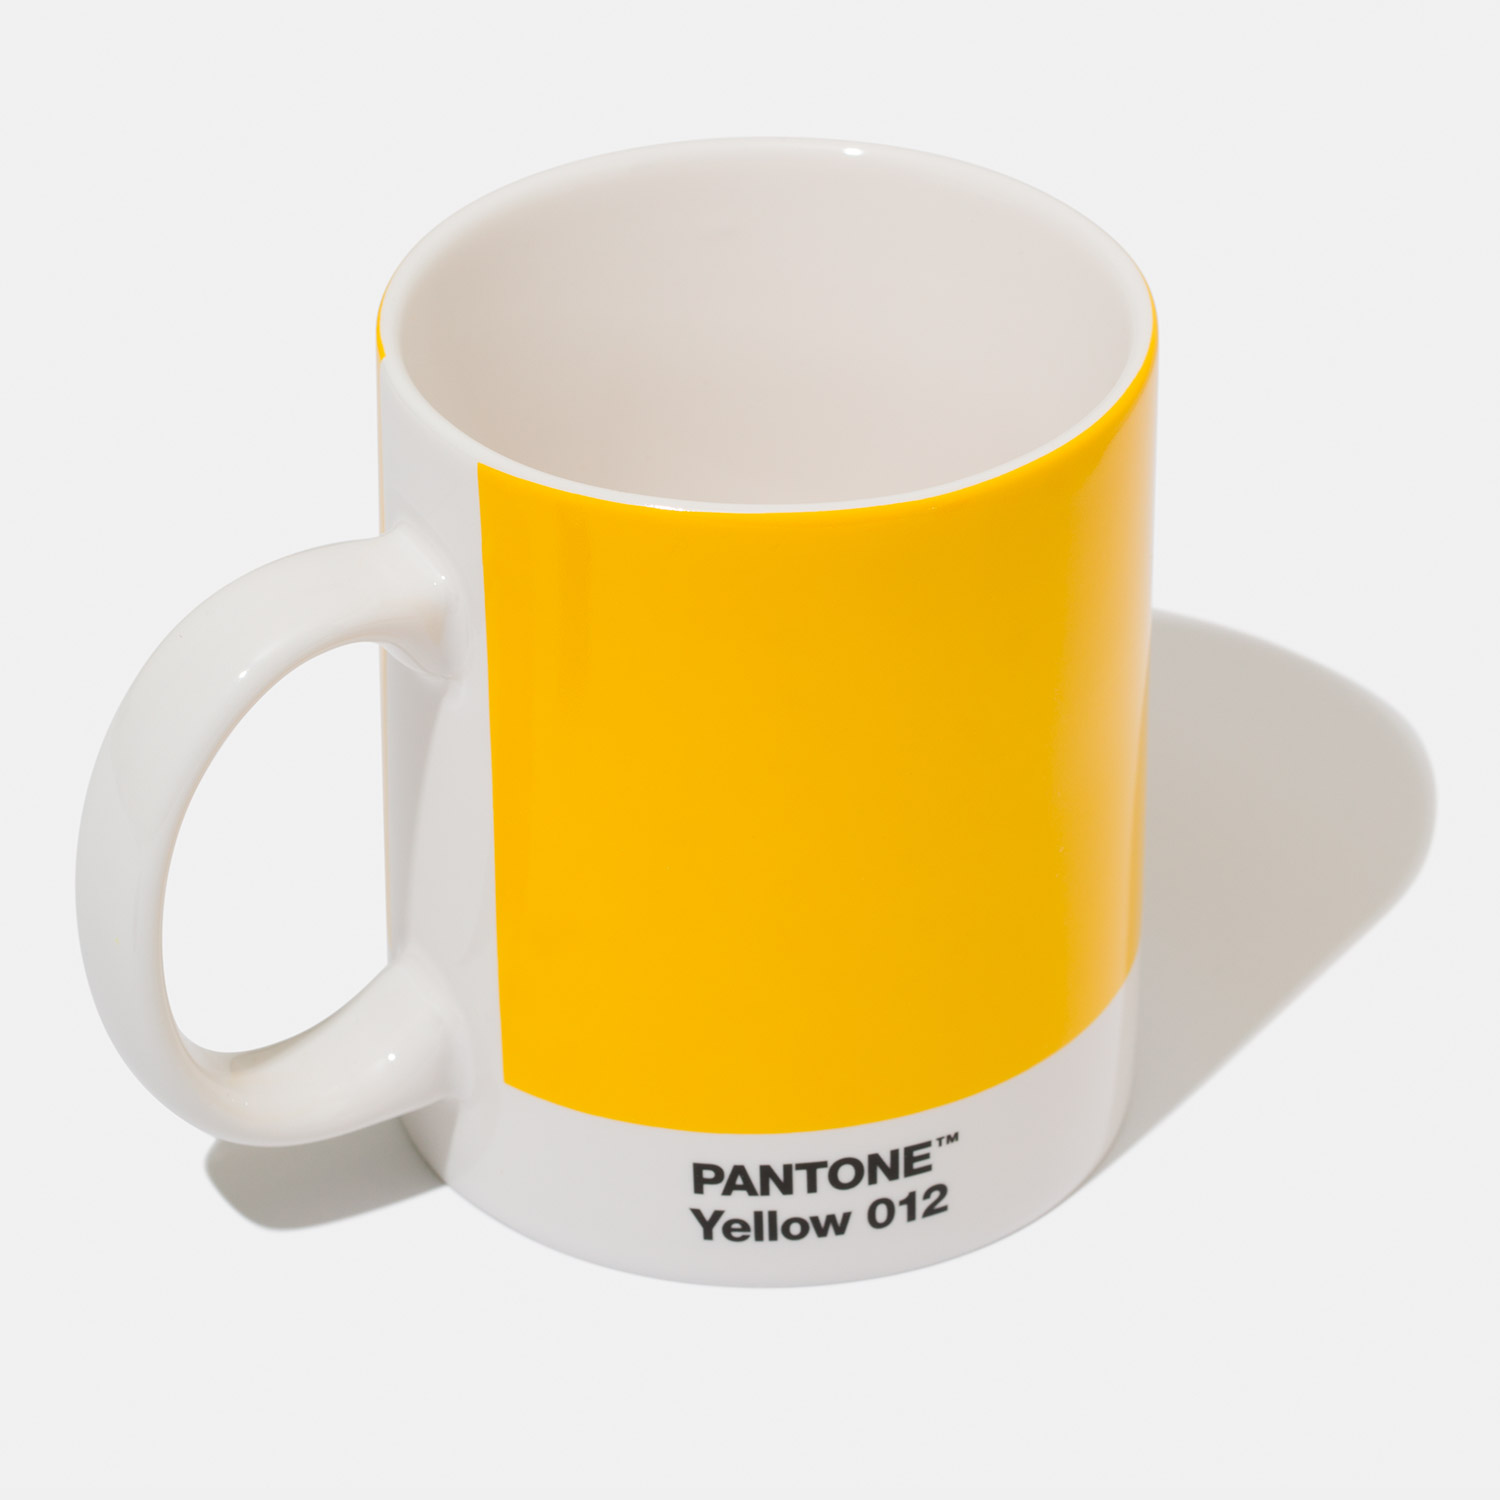 Pantone Mug Yellow 012